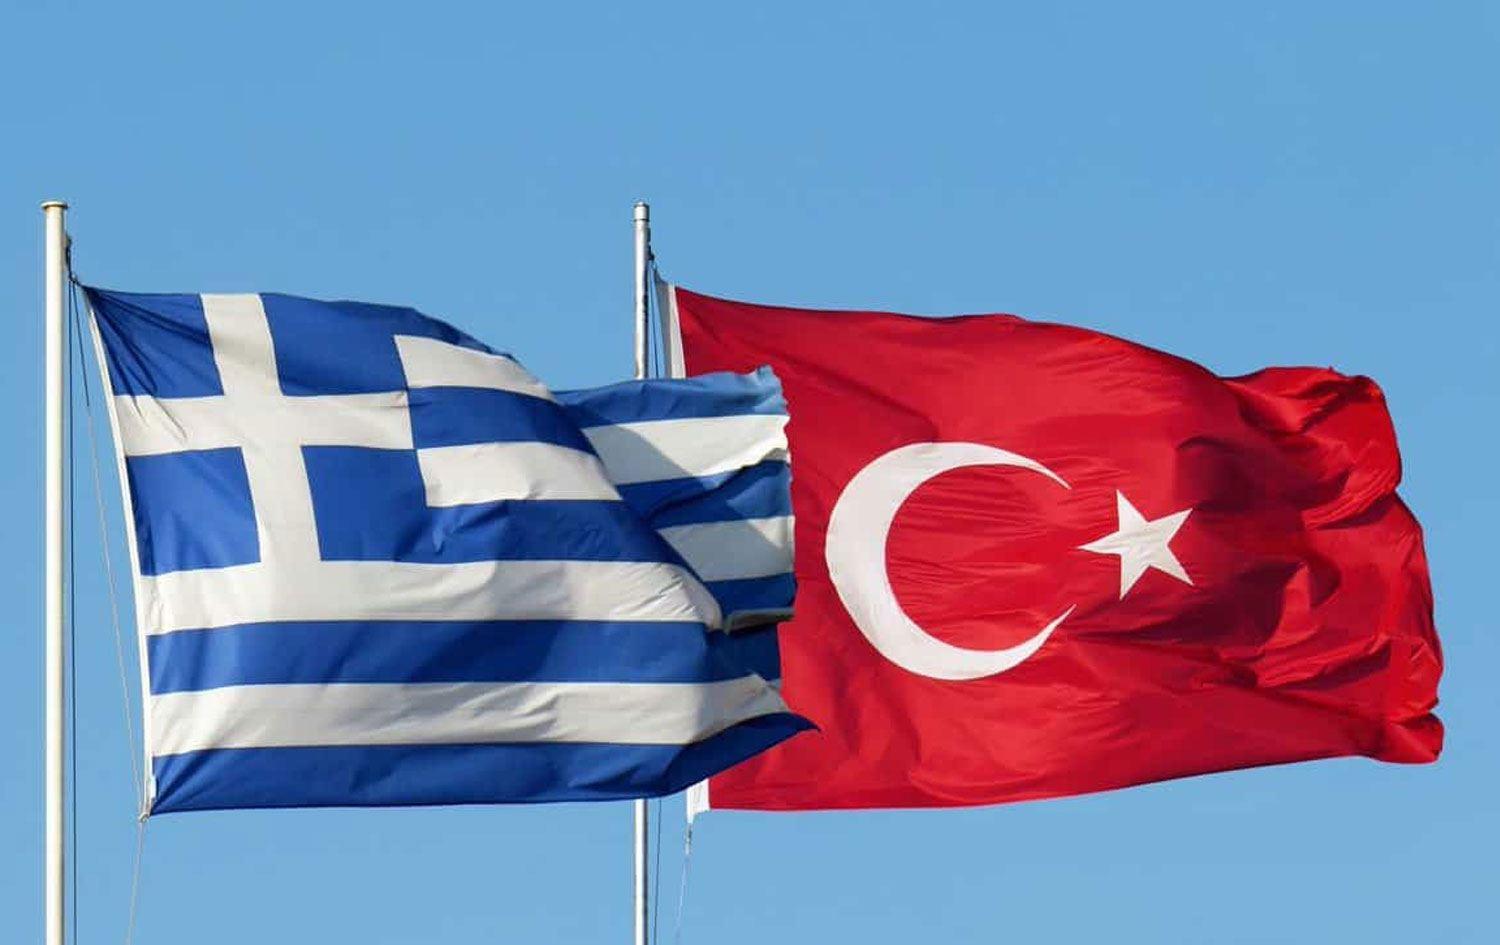 Türkiye ile Yunanistan arasında Pozitif Gündem toplantısı